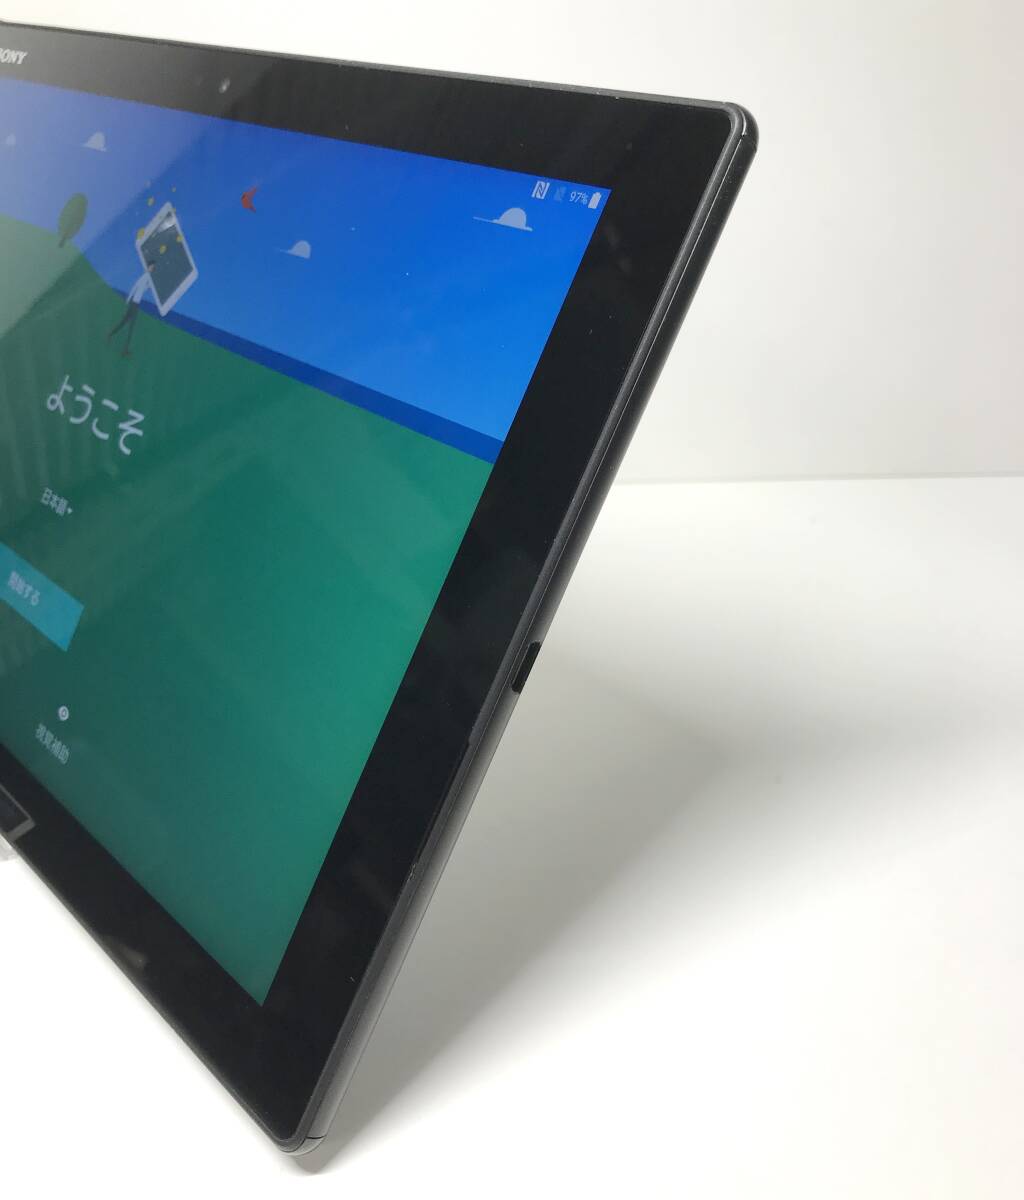 中古良品 SONY Xperia Z4 Tablet docomo SO-05G ブラック SIMロック解除済 10.1インチ バッテリー良好